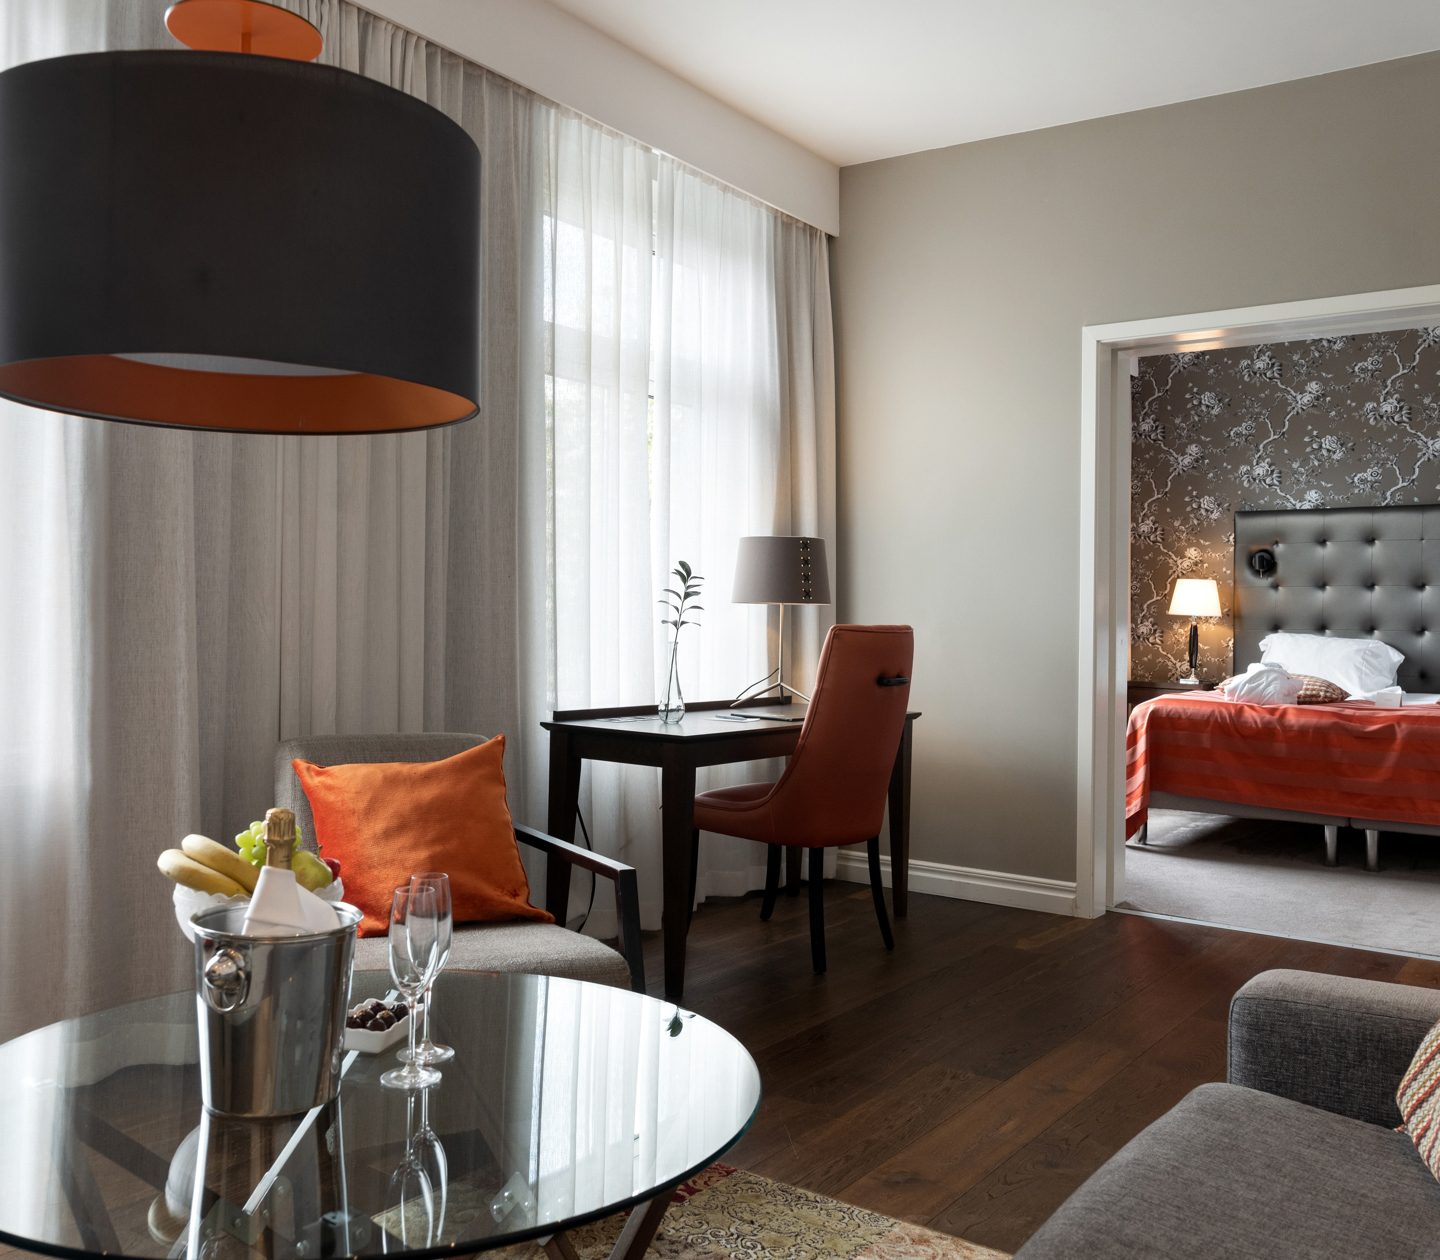 Hotel Suite with cozy interior